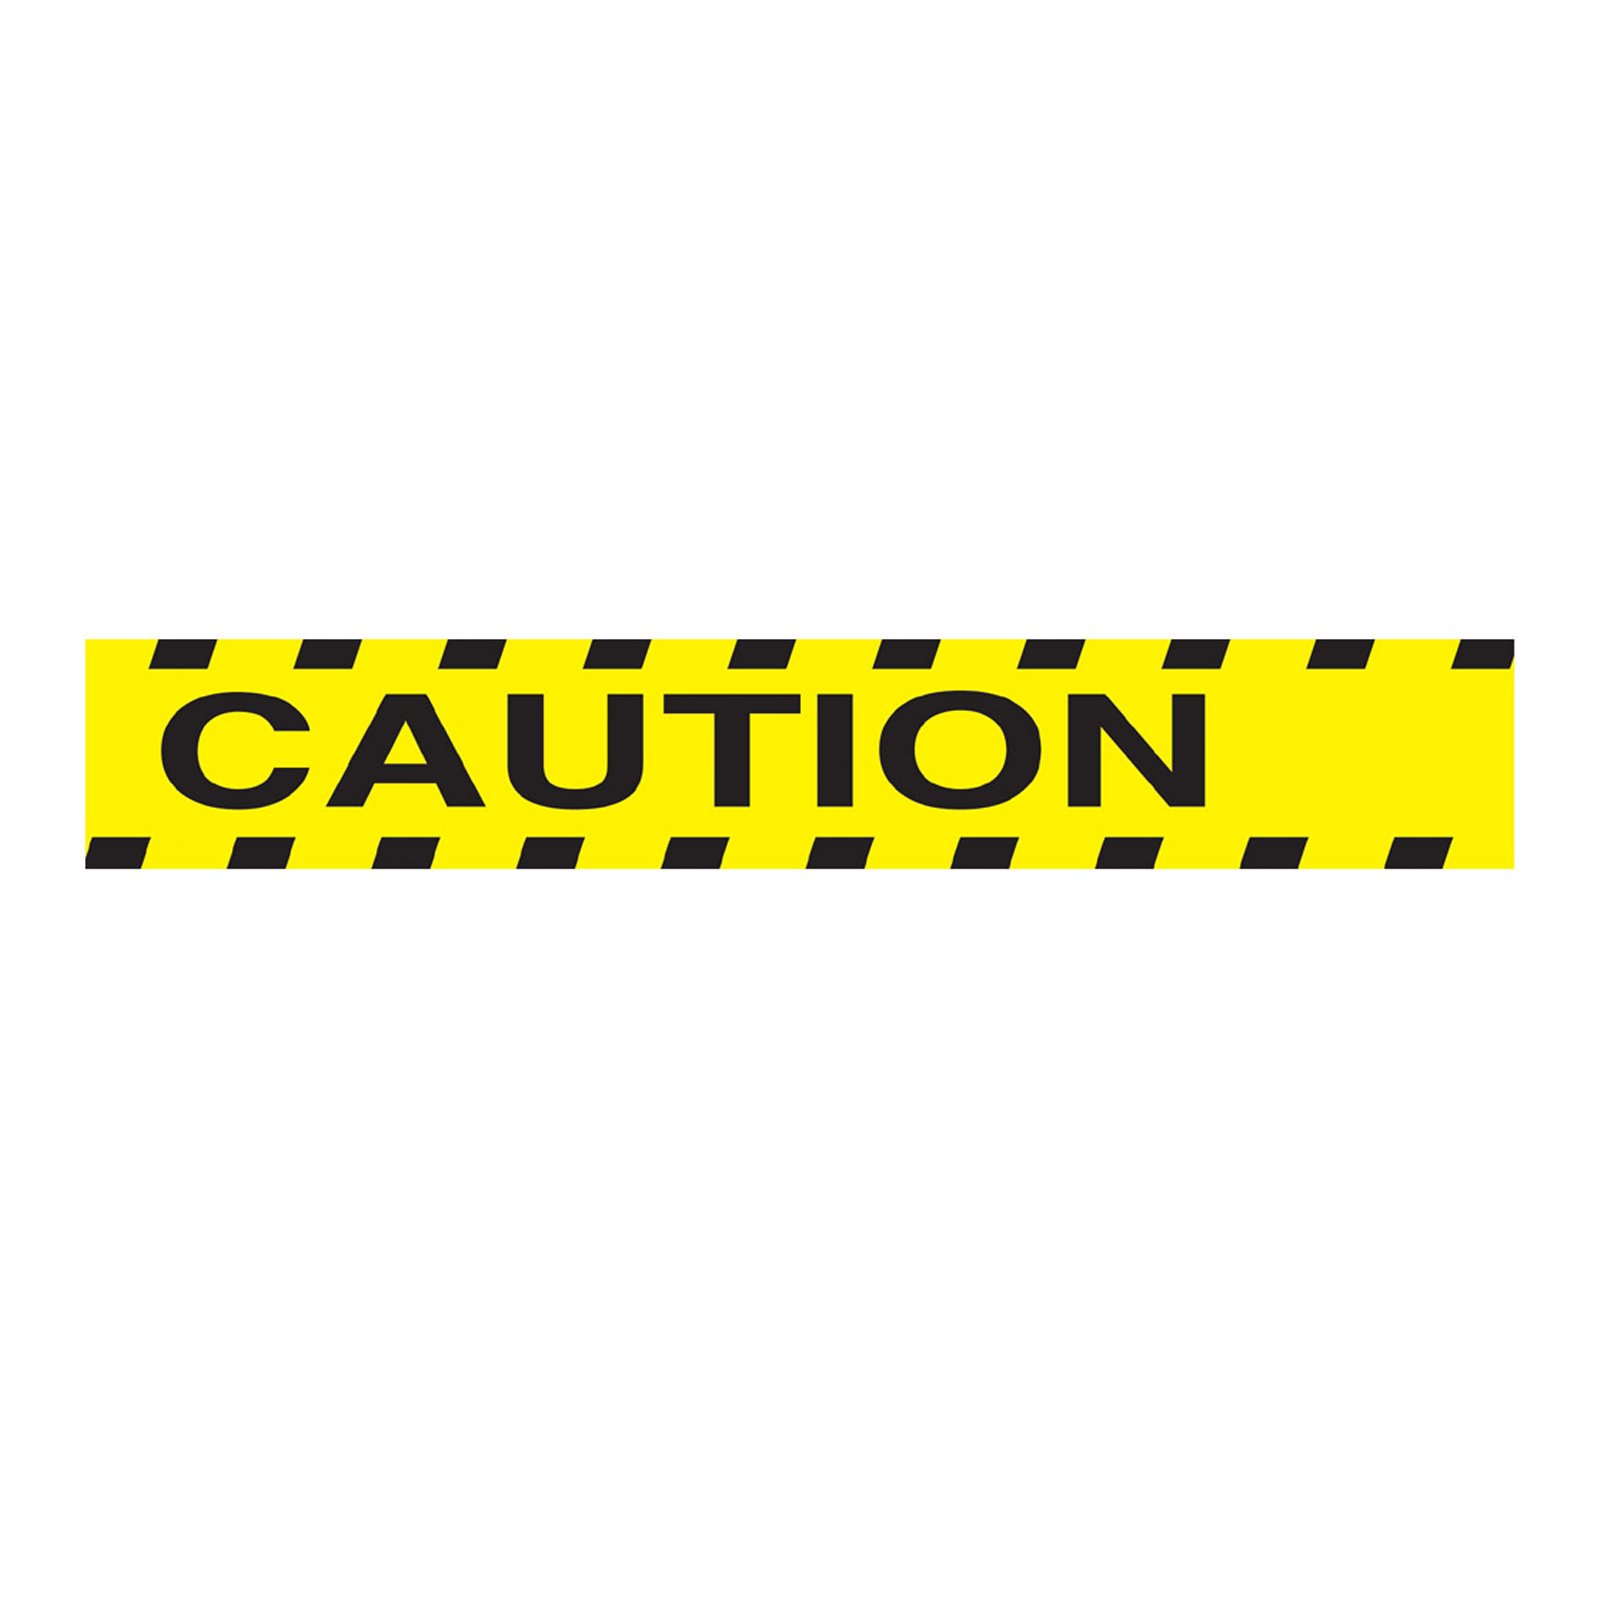 Caution Tape Clip Art Cliparts co